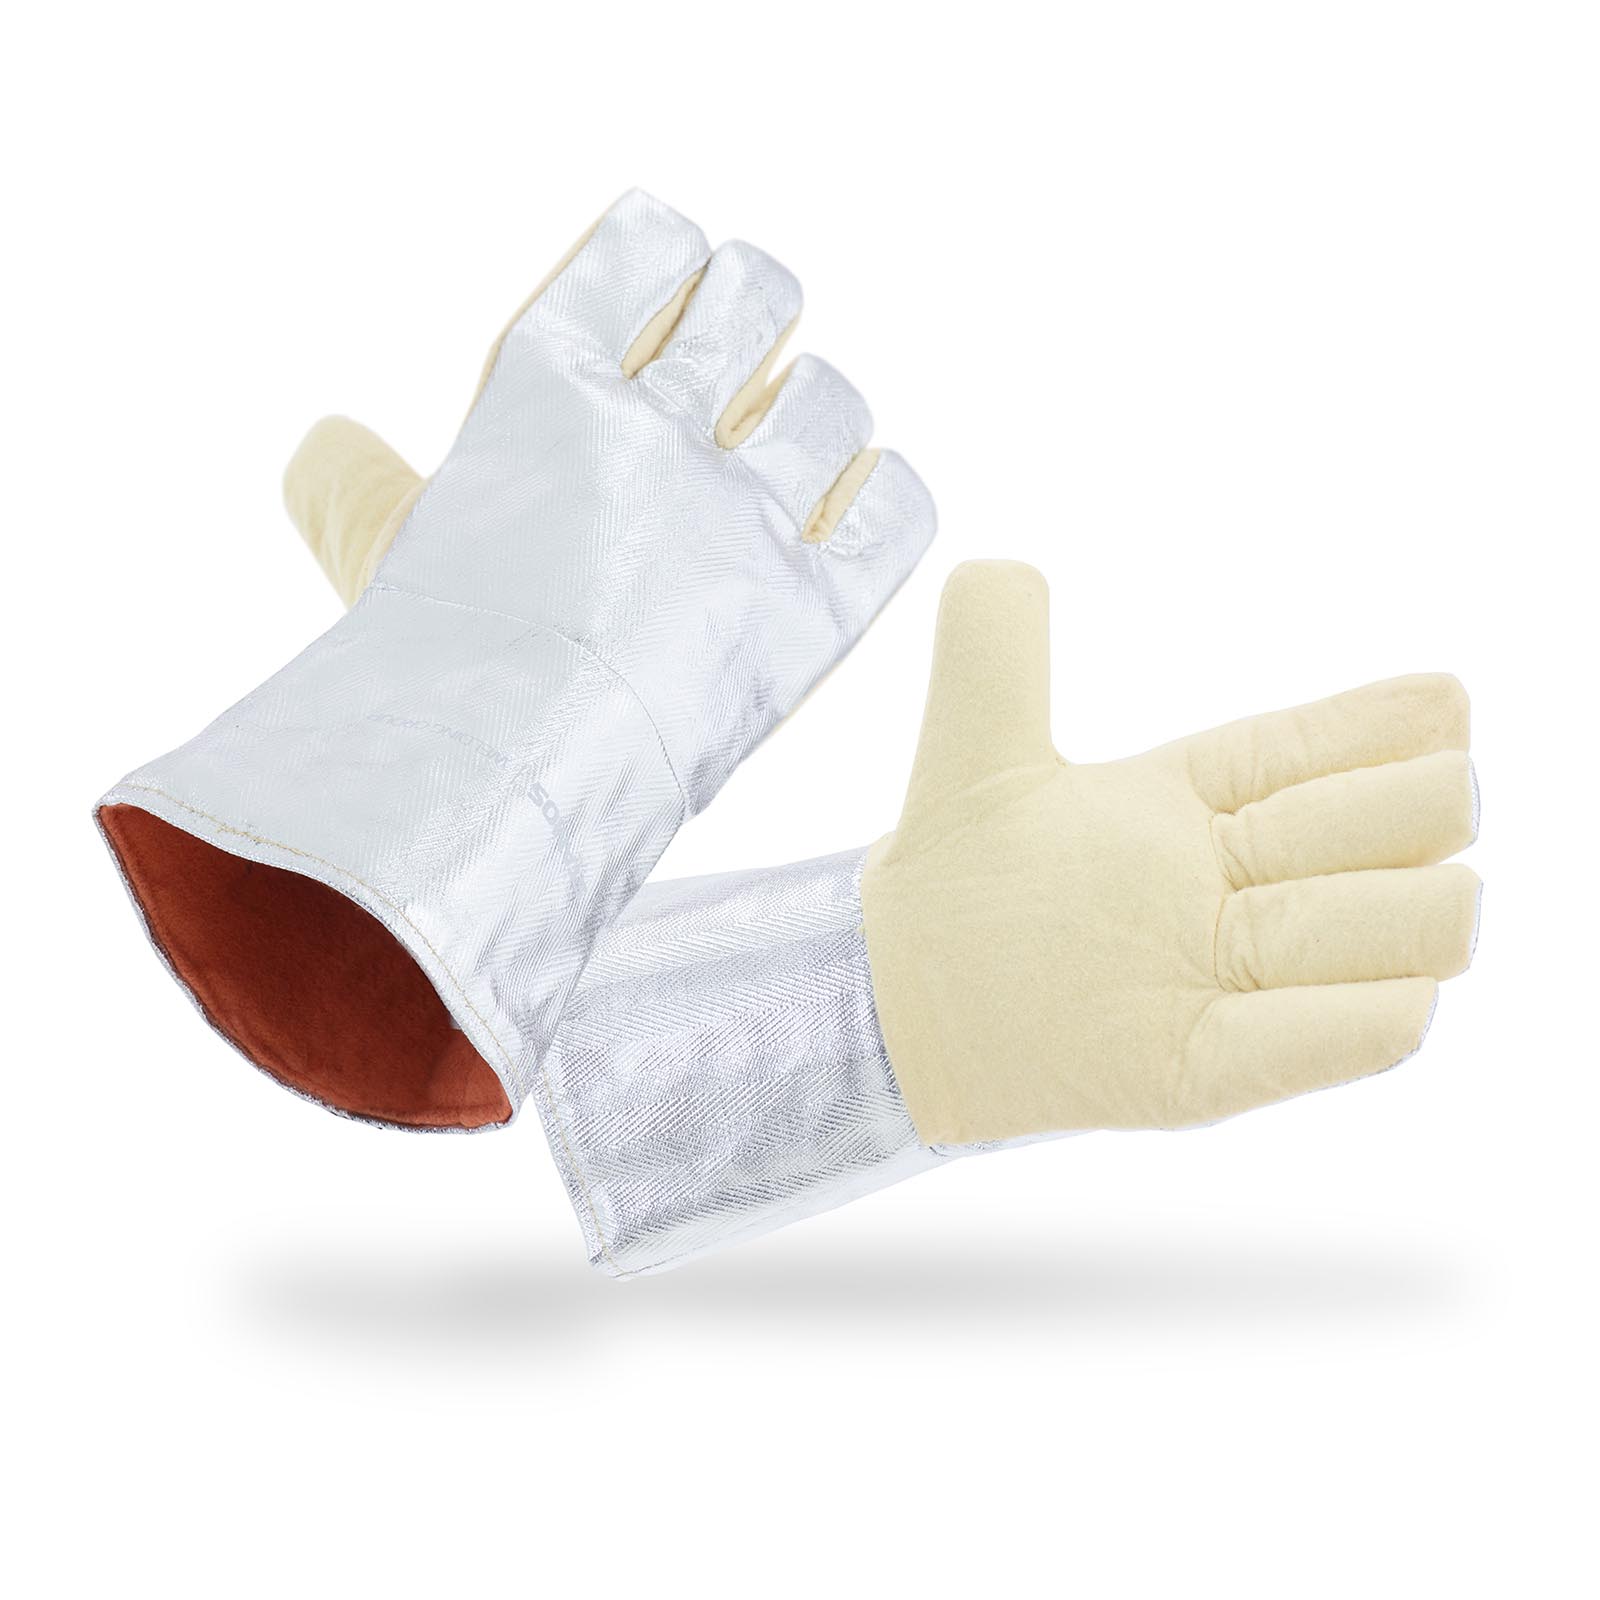 Ръкавици за заваряване - 35 x 20 cm - арамидно влакно - 35 cm дължина